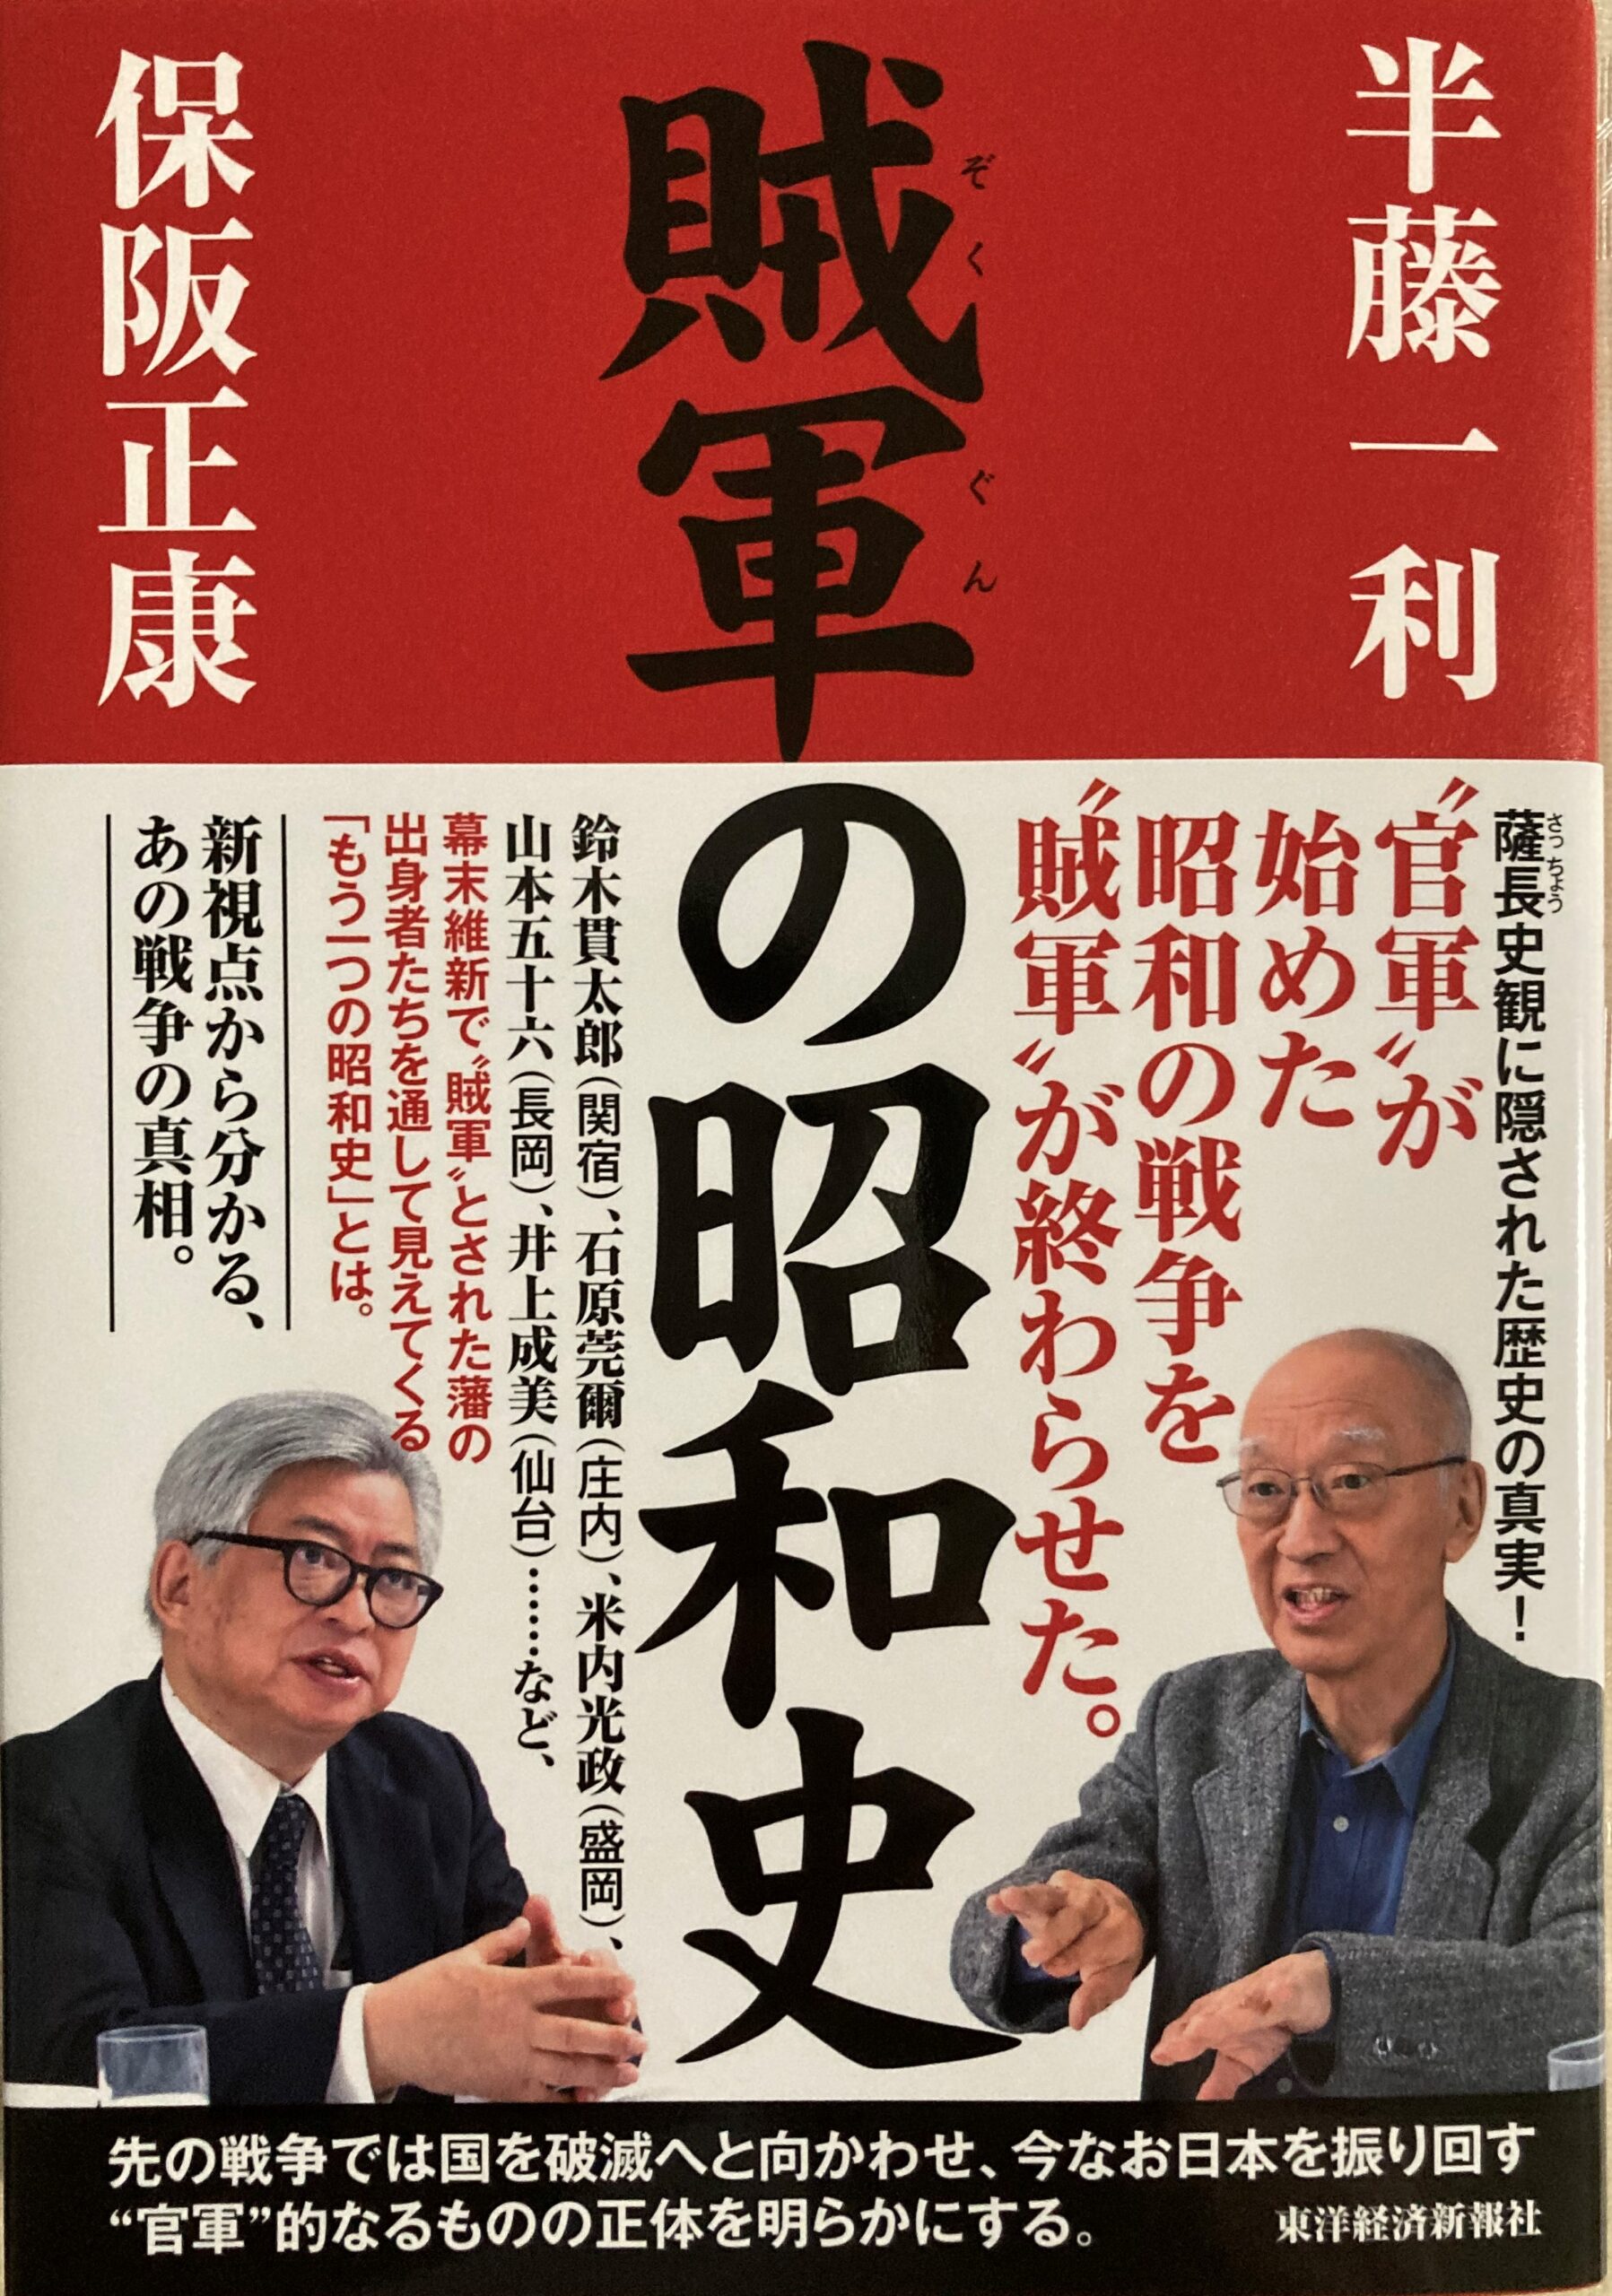 紹介した「賊軍の昭和史」の表紙の写真。対談者二人の写真と非常に印象的な内容の紹介コピー。